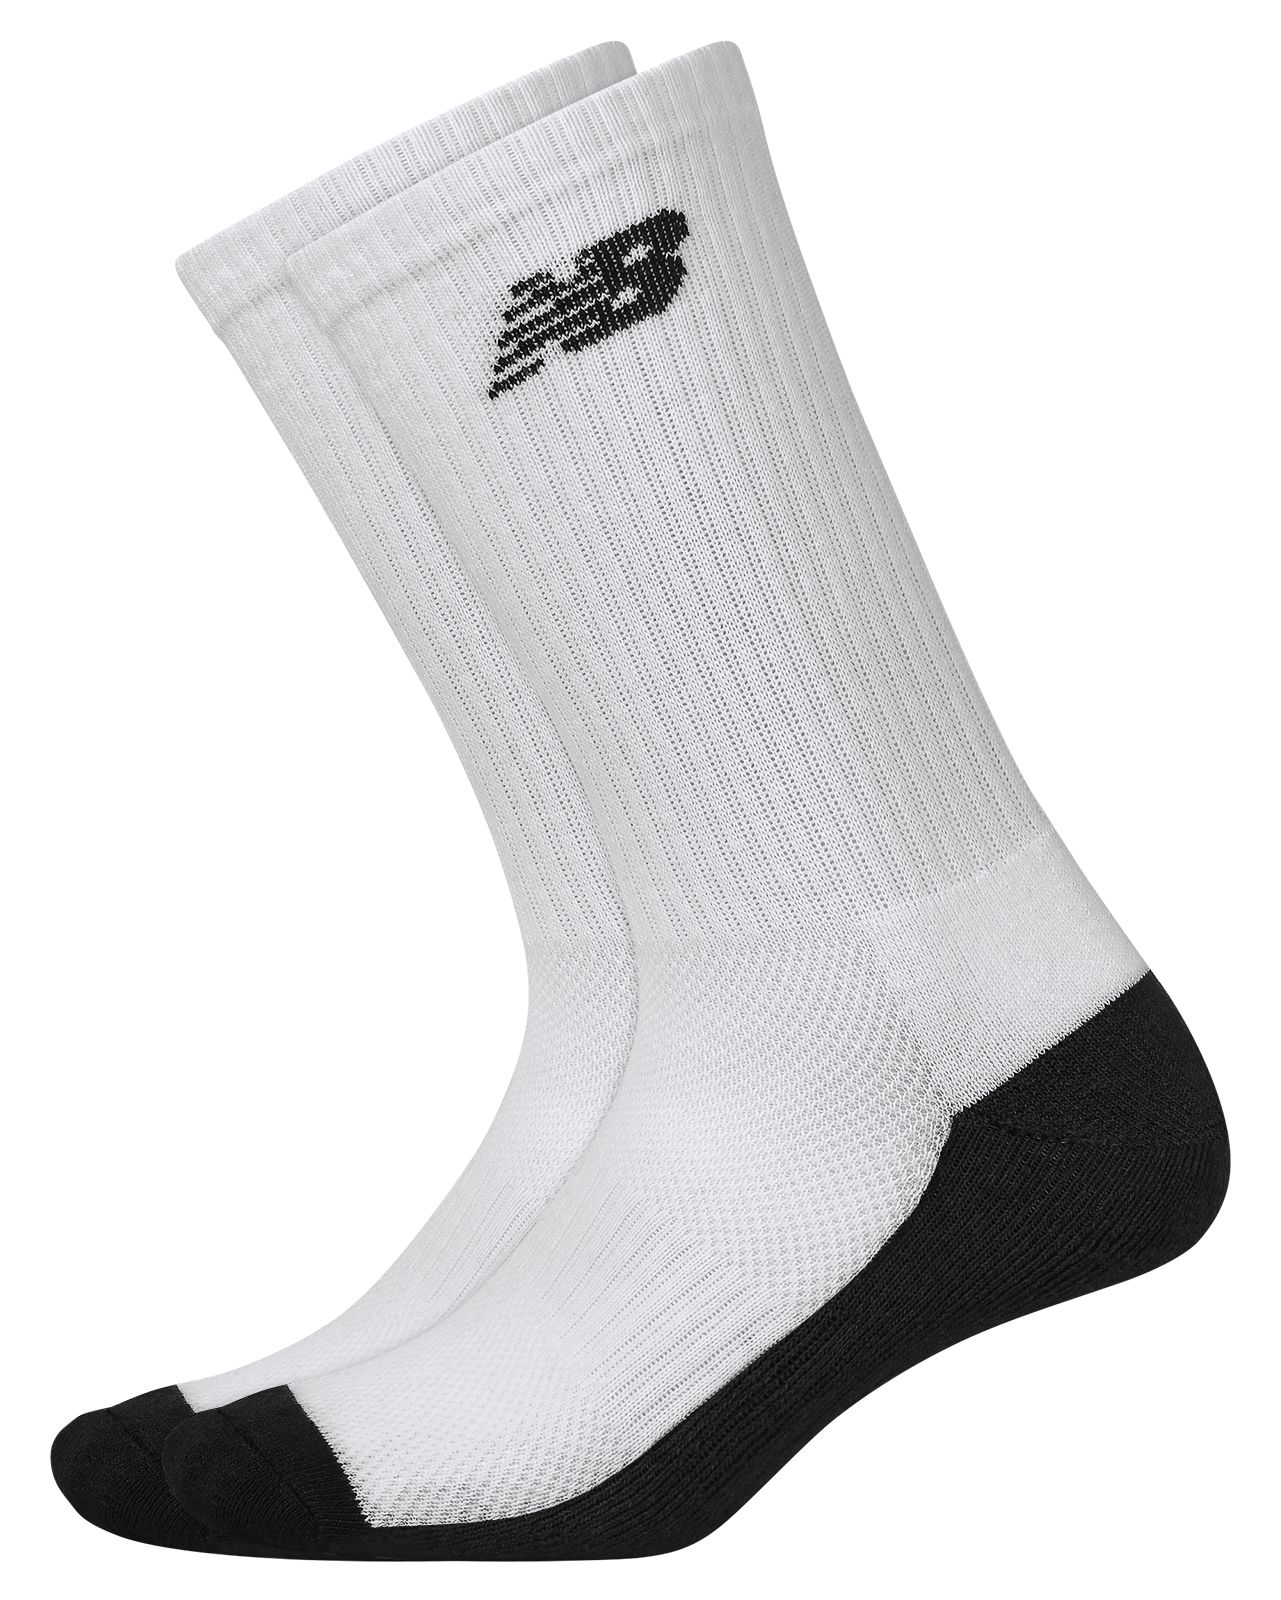 new balance men's ankle socks